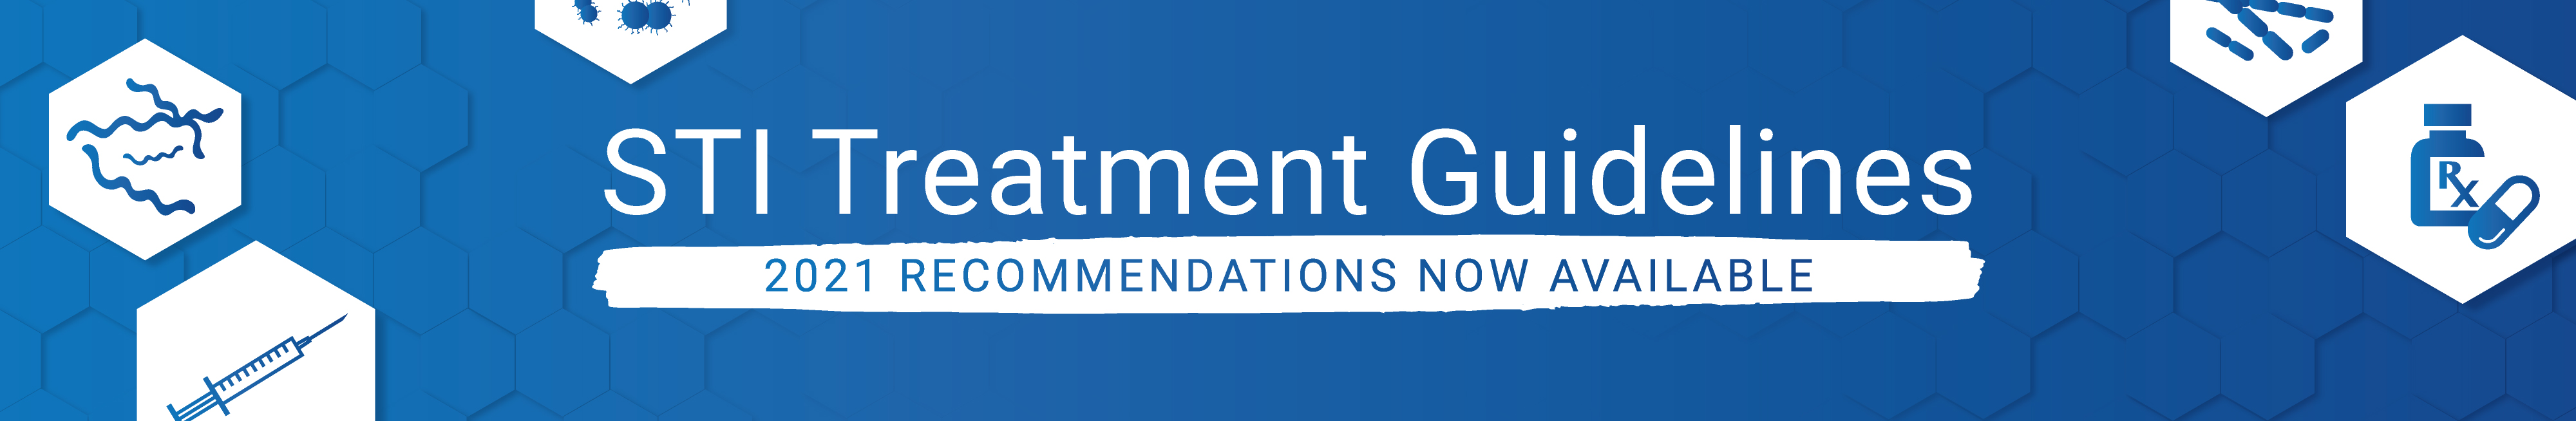 STI_Treatment_Guidelines Banner.jpg